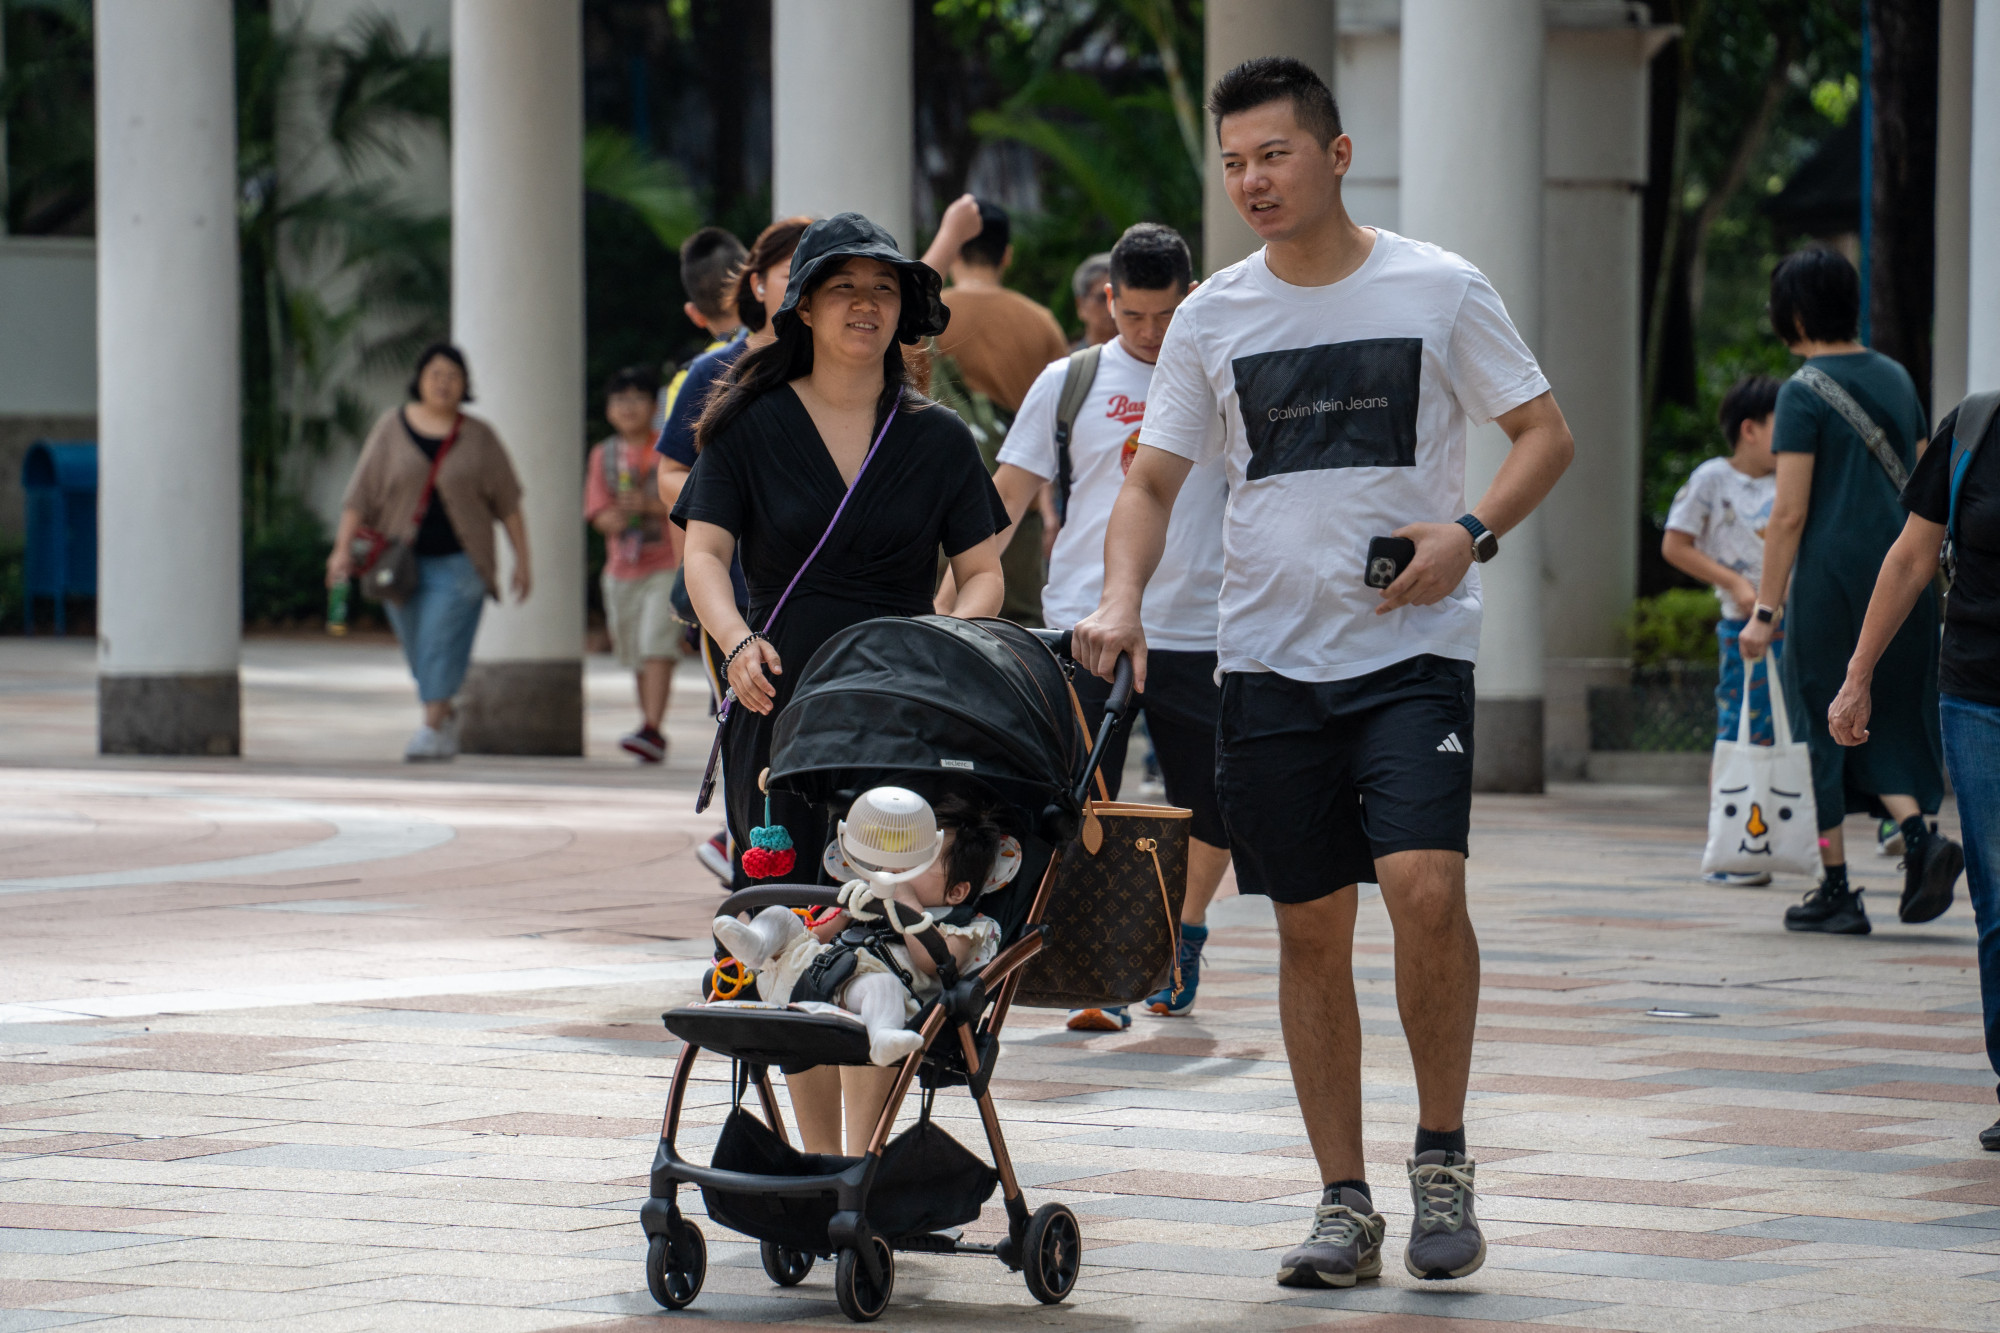 A gyereket vállaló szülőknek közel egymilliót fizetnek Hongkongban, ahol ez az összeg egy havi lakbérre sem elég